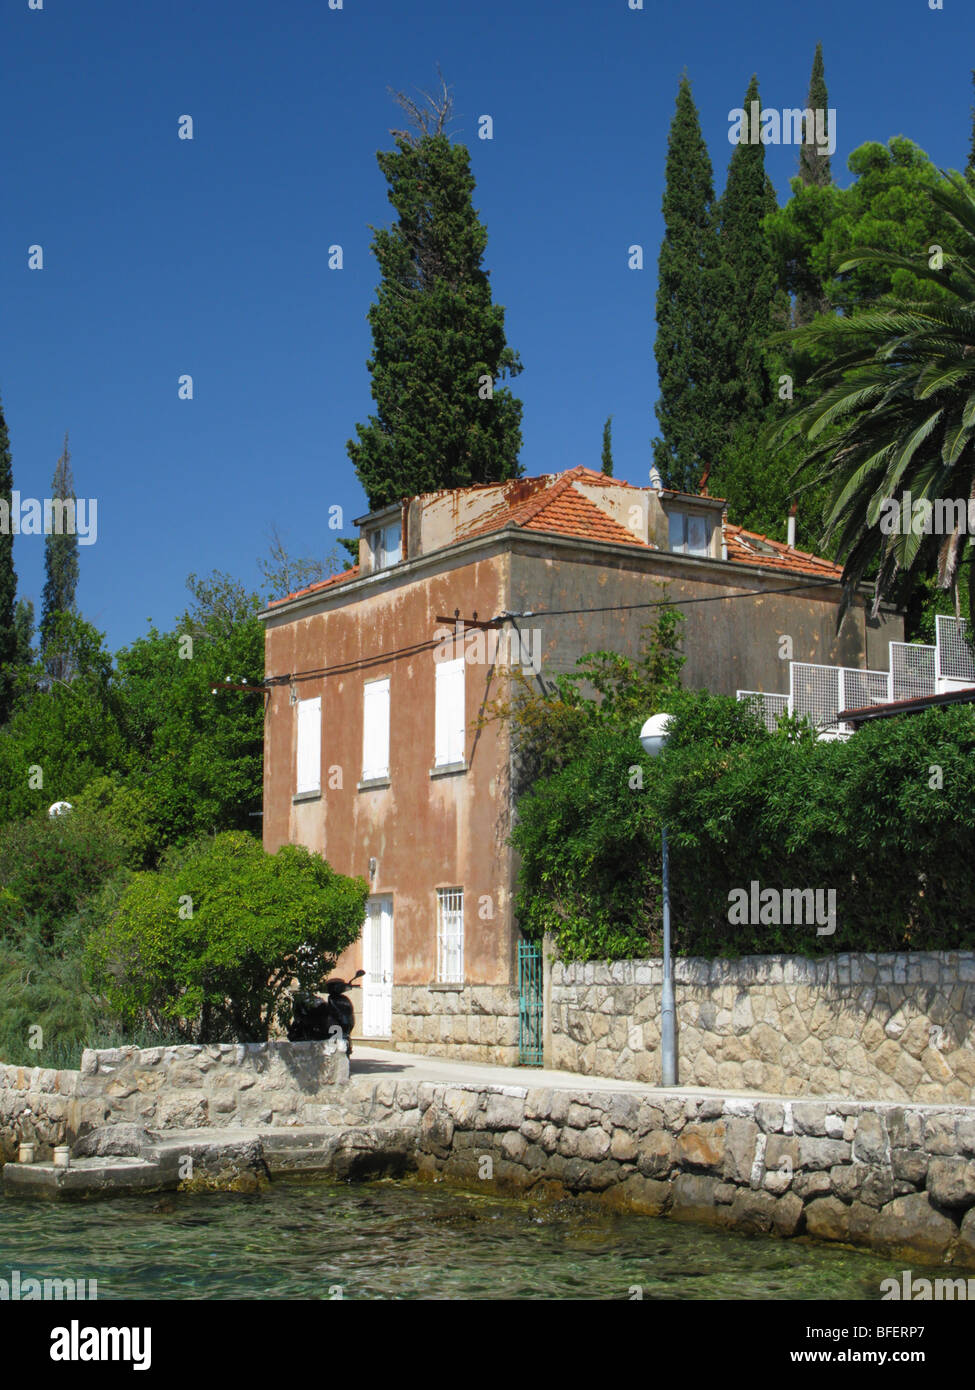 Avis de Donje Celo bay Kolocep Island près de Dubrovnik Croatie avec ancienne maison et villas Banque D'Images